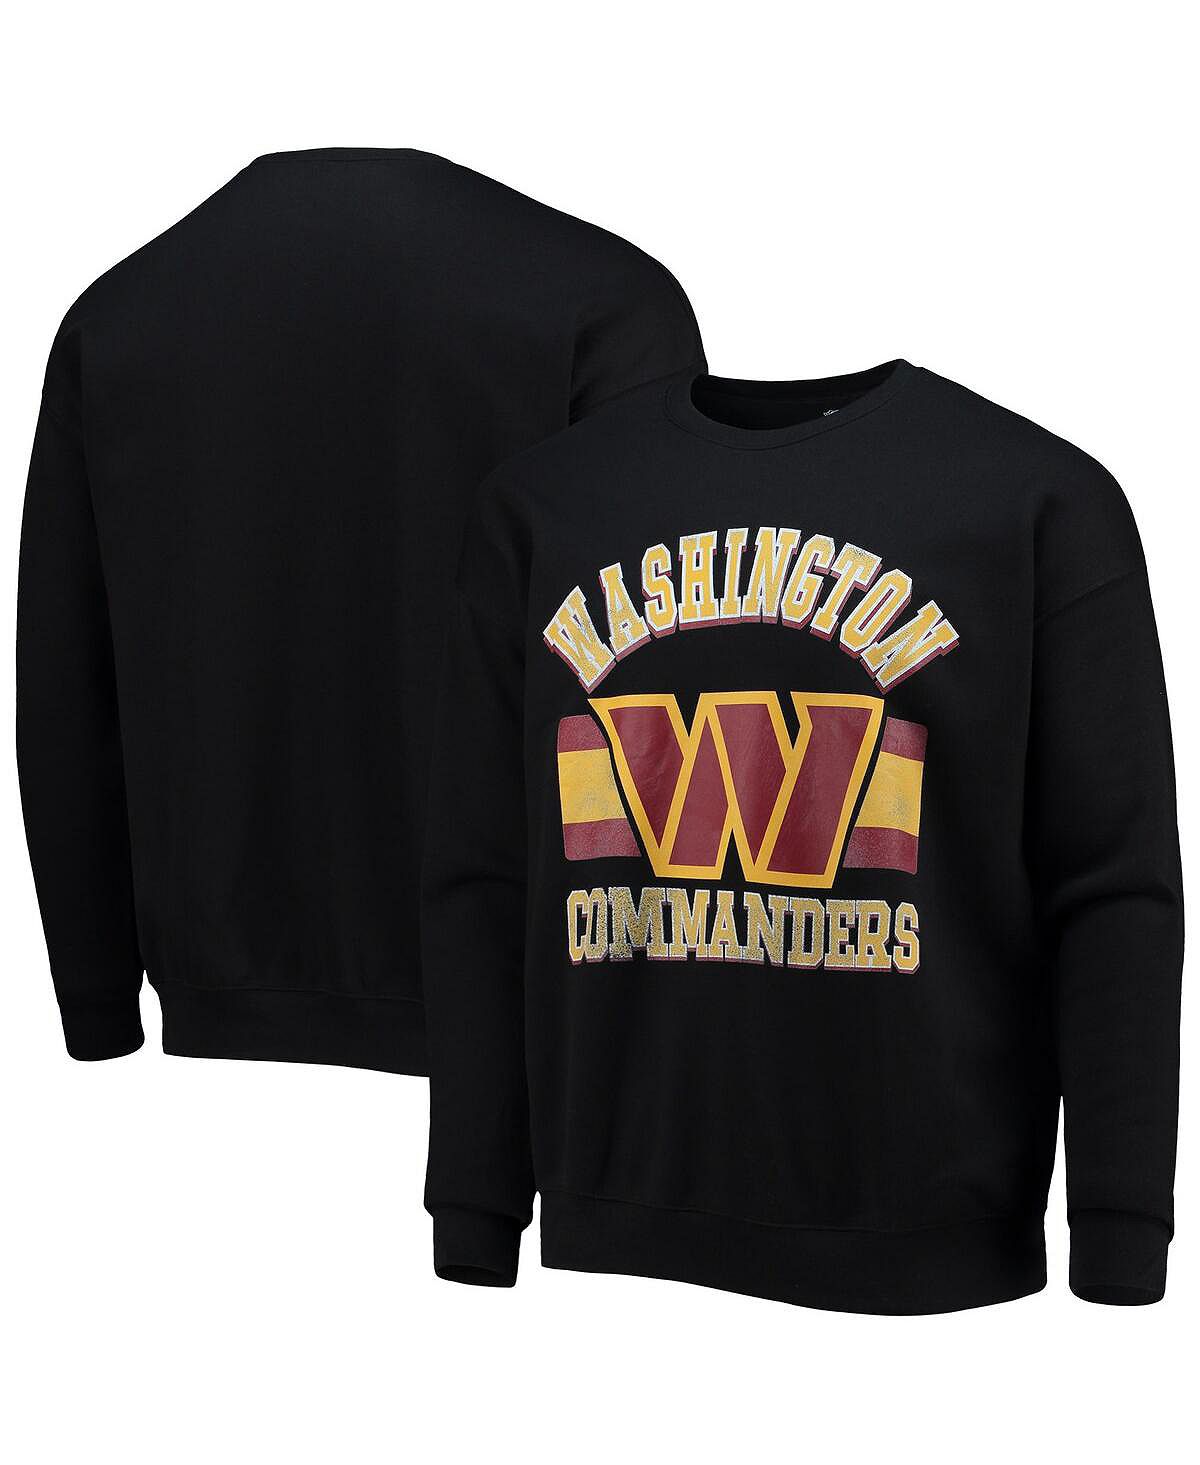 Мужская коллекция NFL x Darius Rucker от Black Washington Commanders, пуловер из губчатого флиса, толстовка Fanatics